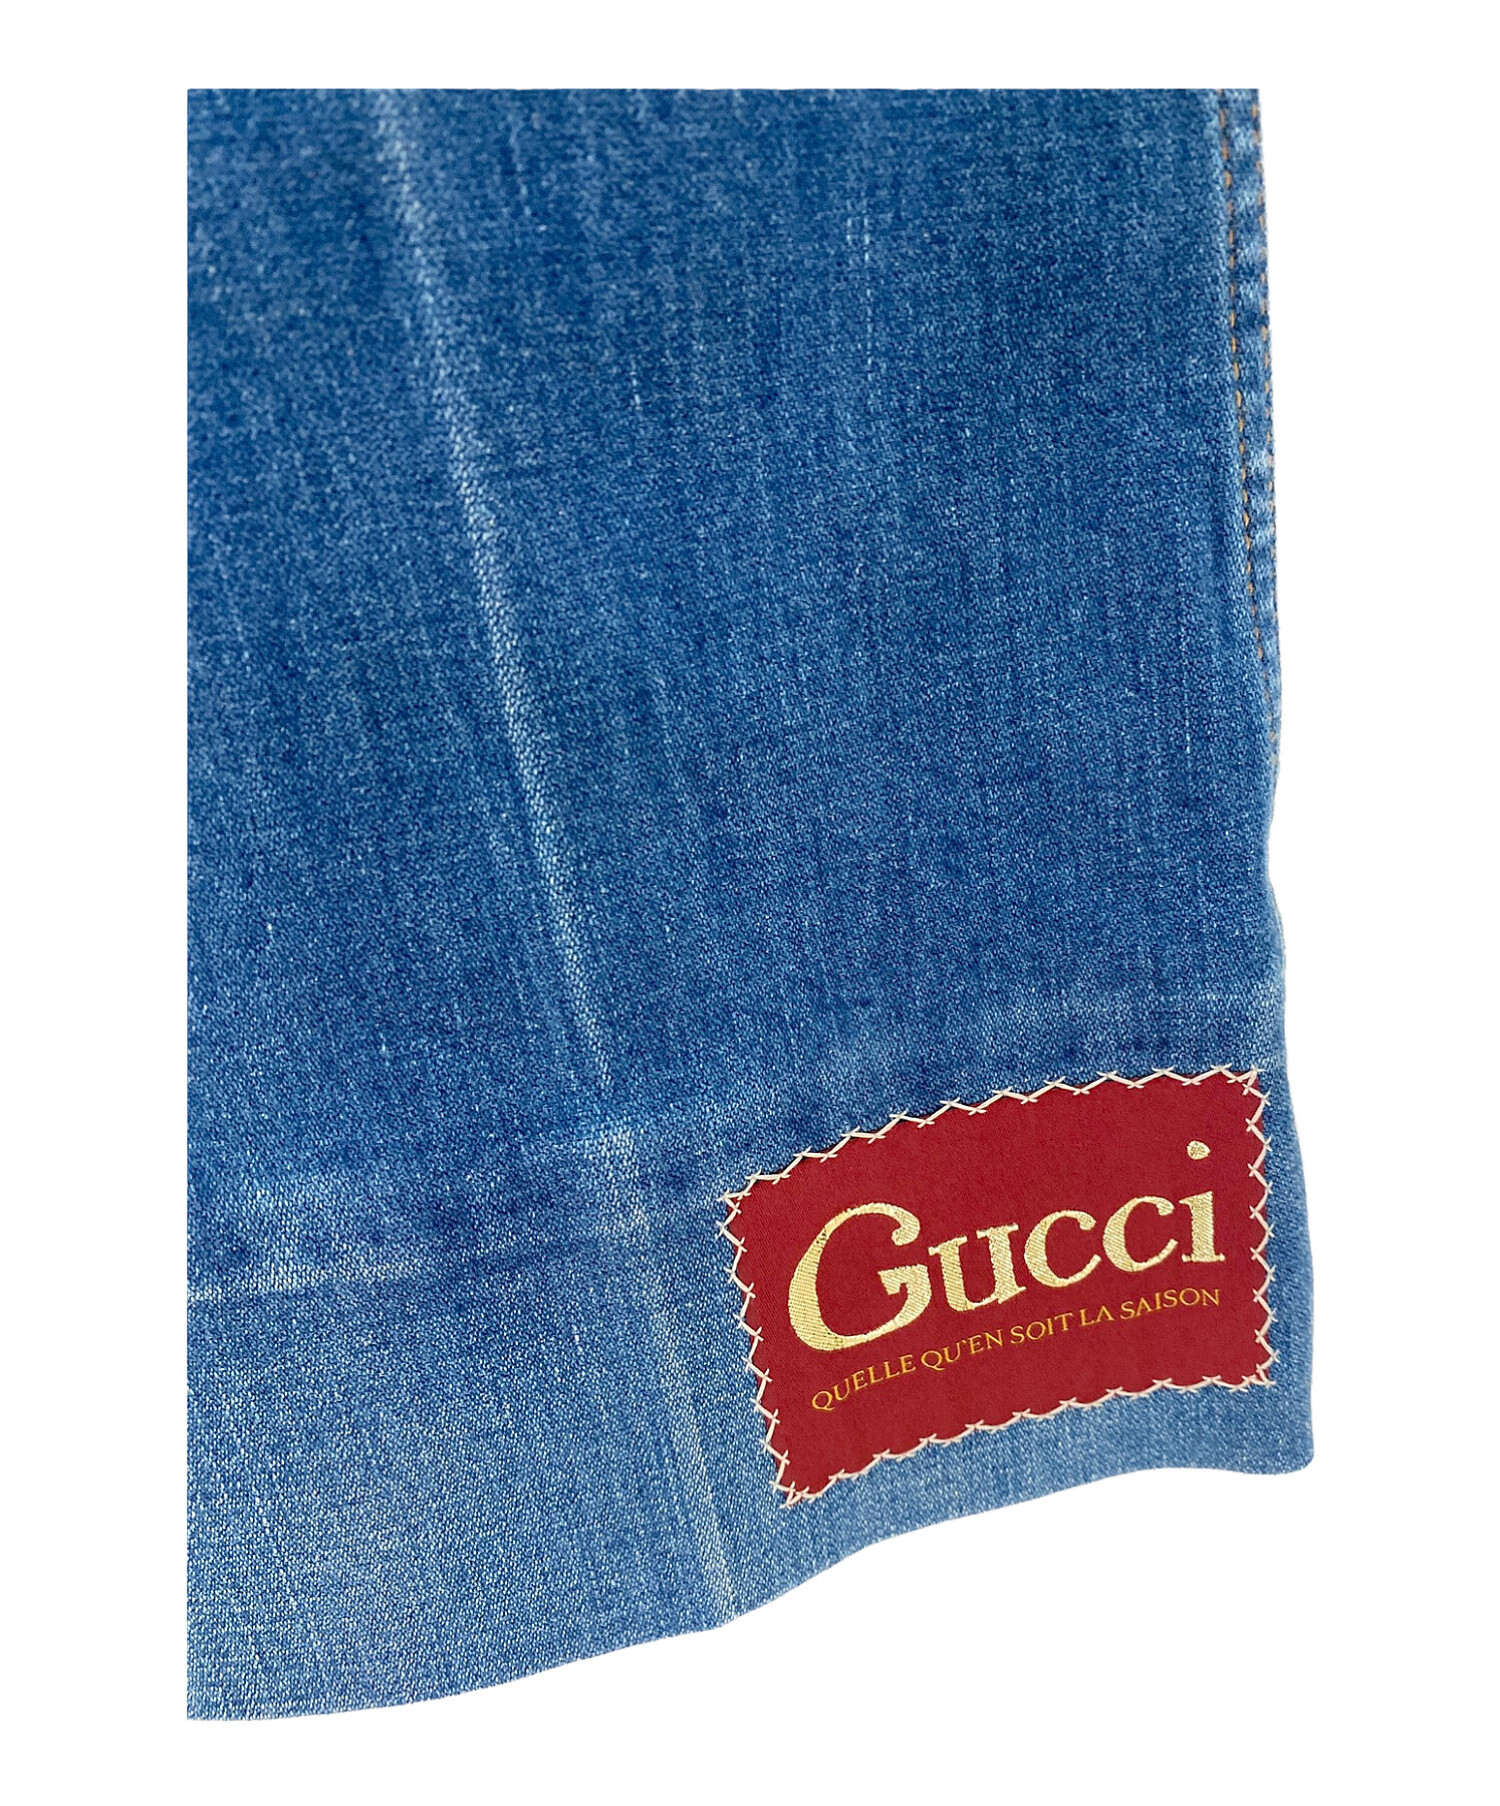 GUCCI (グッチ) GUCCI Label付き ウォッシュドデニムフレアパンツ ブルー サイズ:22インチ/イタリアサイズ